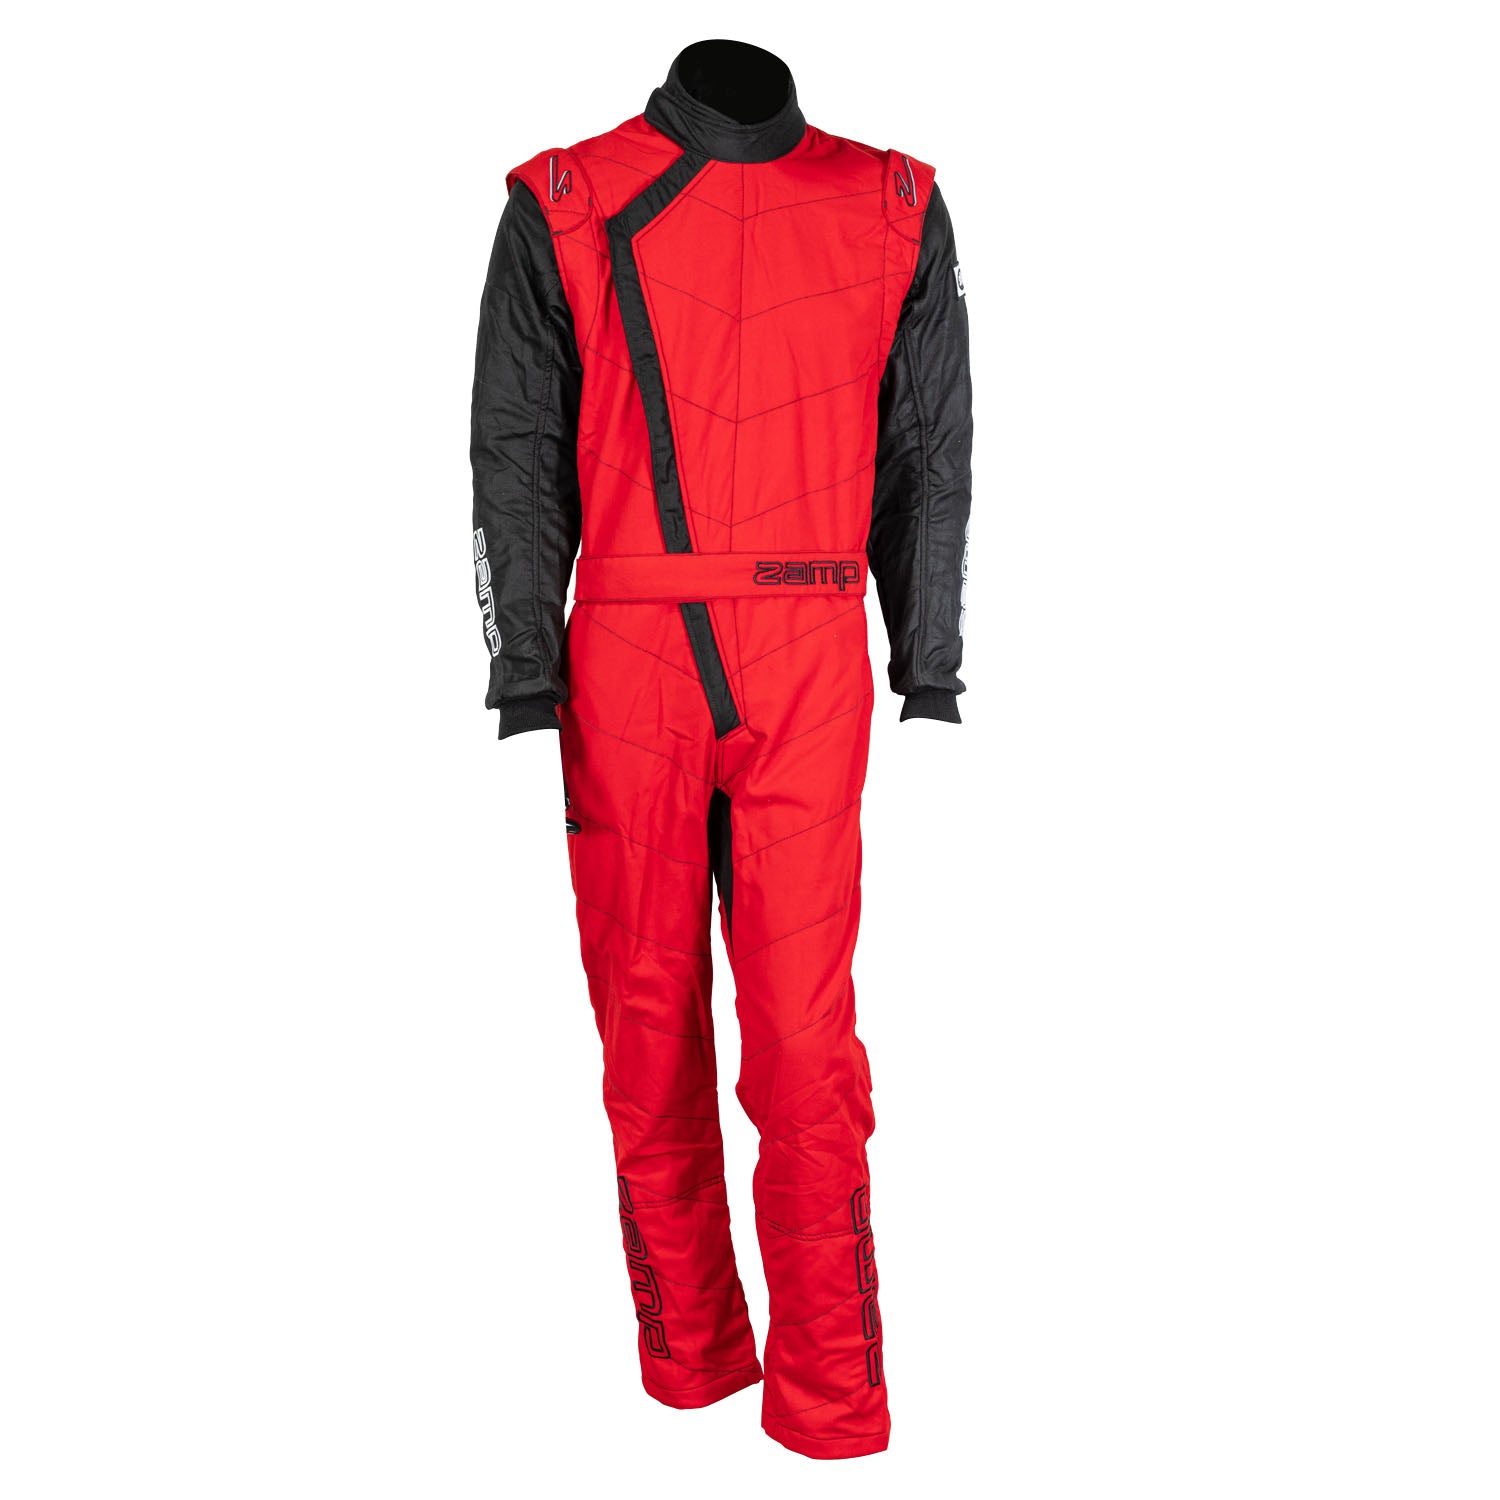 ZAMP Racing ZR-40 Race Suit Red R07C02M